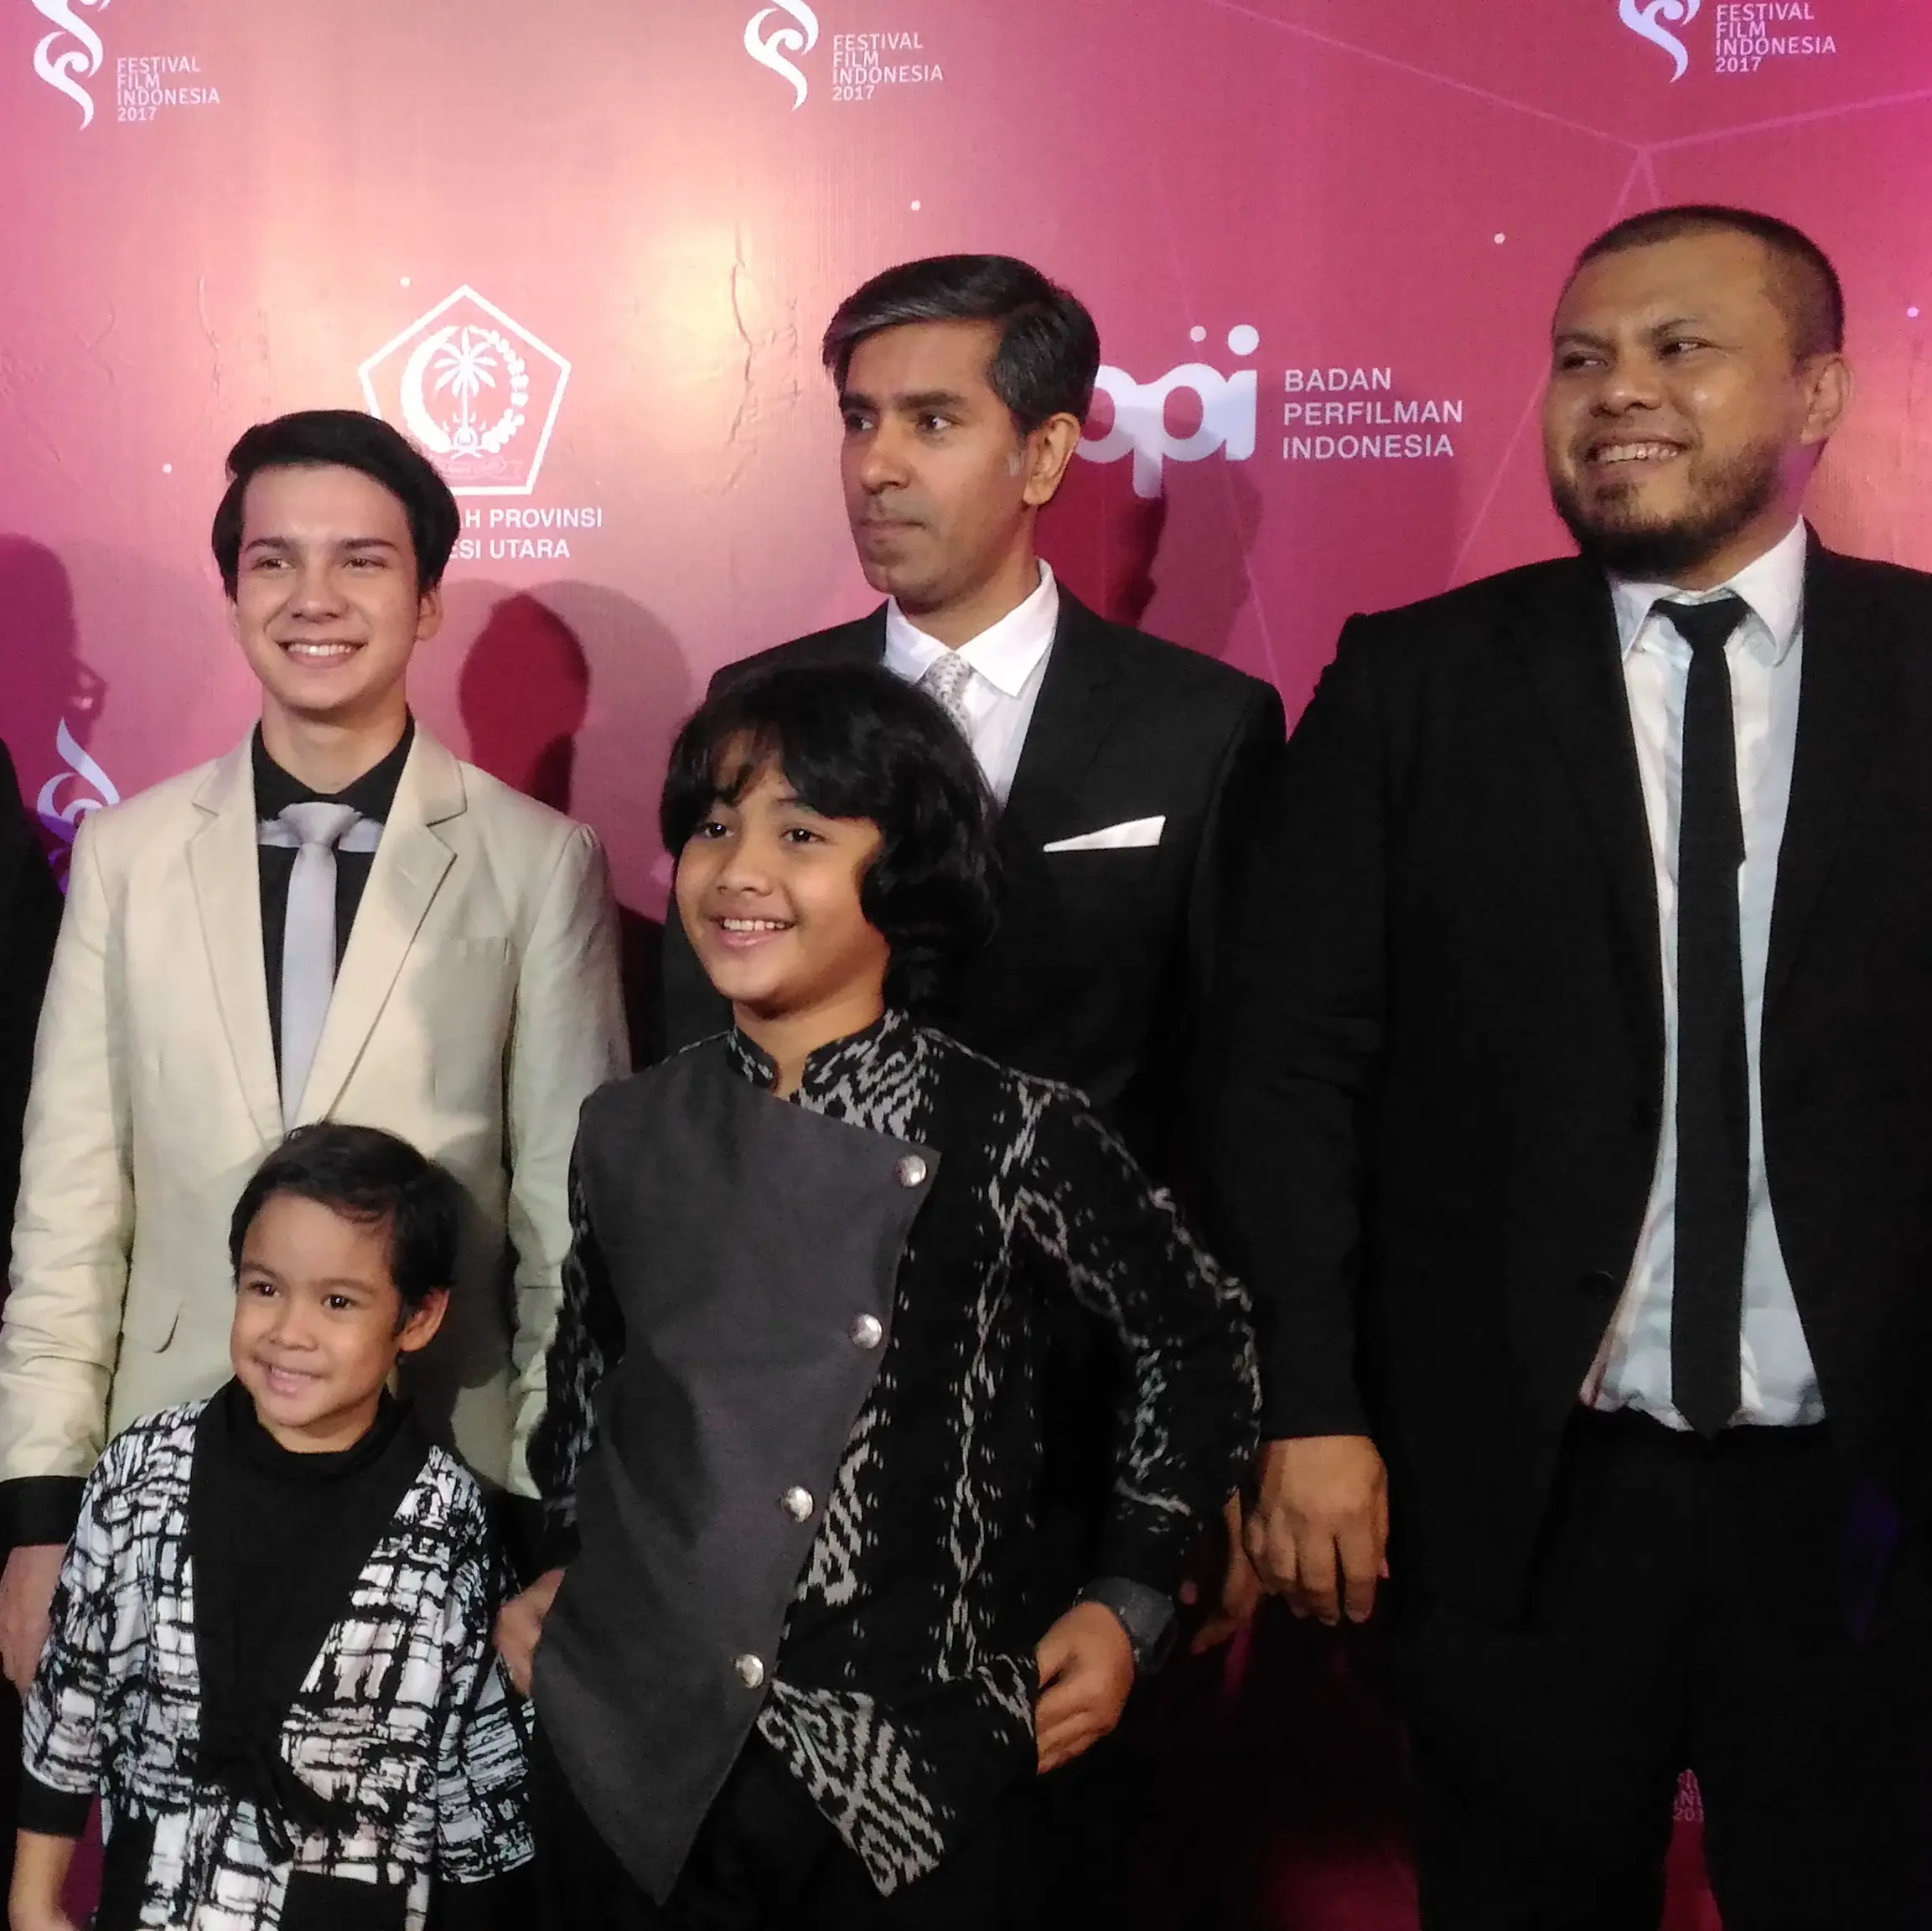 Para pemain dan sutradara film Pengabdi Setan di Red Carpet ajang Festival Film Indonesia 2017 yang berlangsung di Manado, Sulawesi Utara (/Zulfa Ayu Sundari)